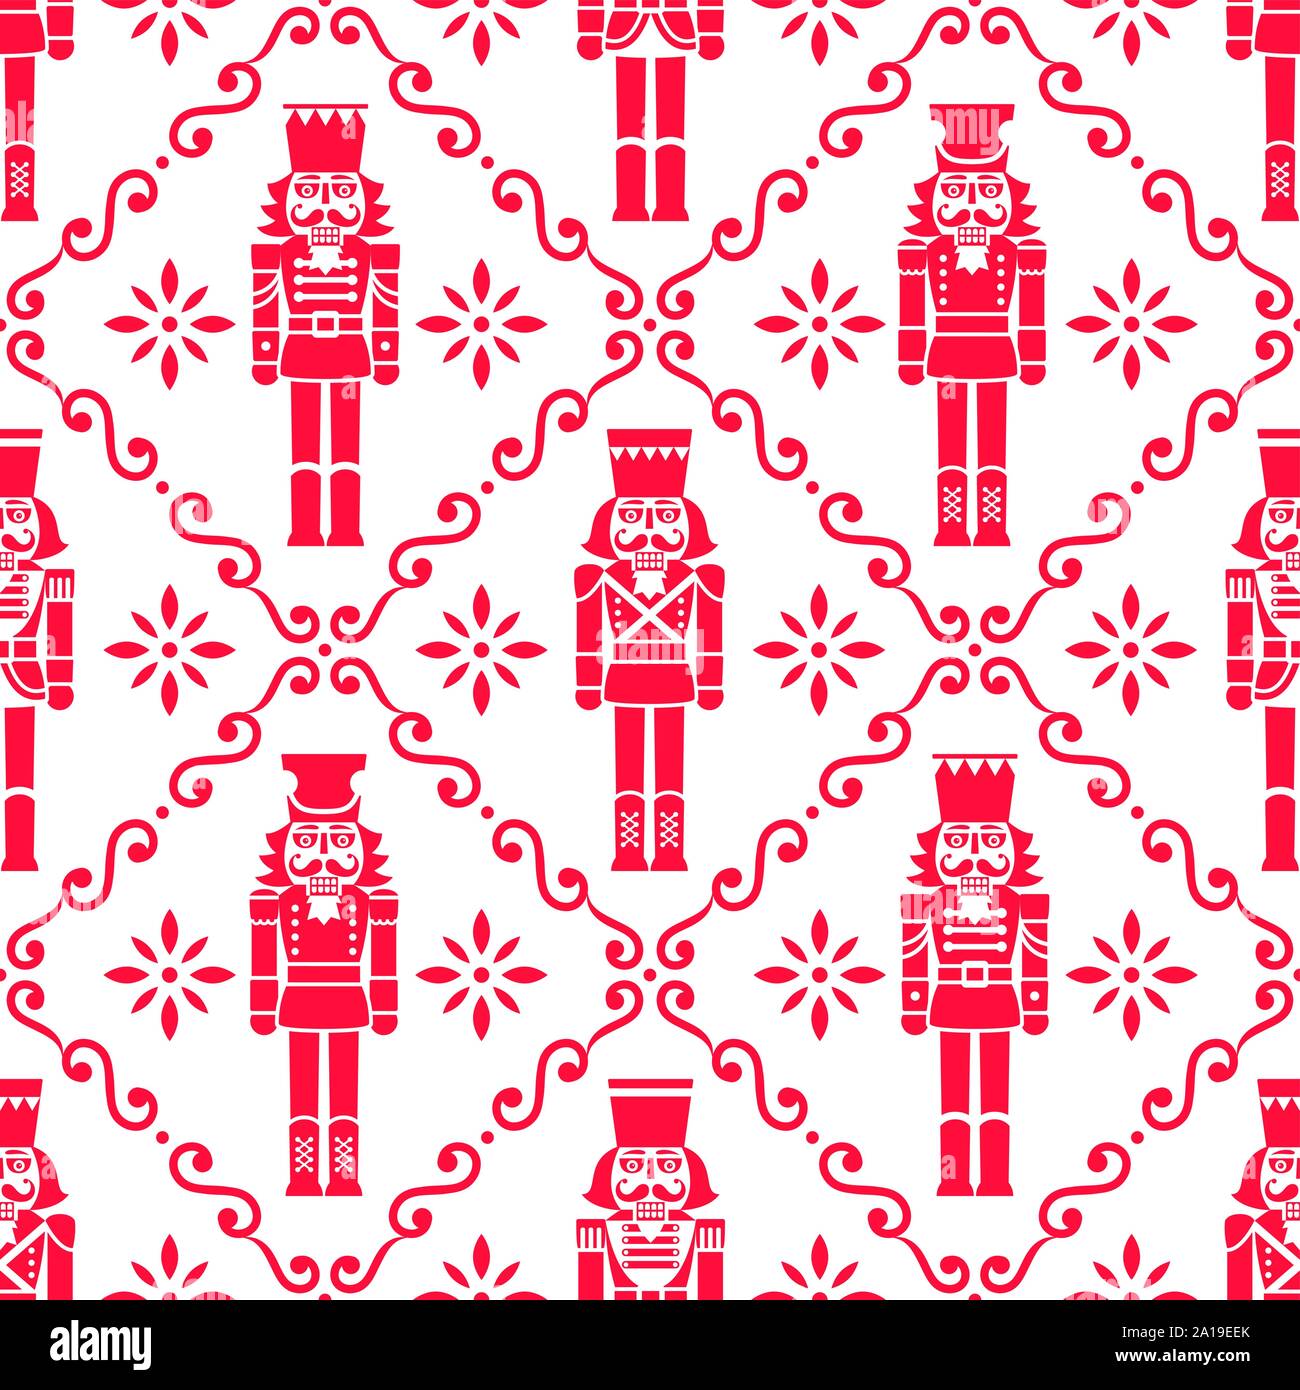 Weihnachten Nussknacker Vektor nahtlose Muster - Xmas Soldat Figur sich wiederholende Rot und Weiß Ornament, textile Design Stock Vektor